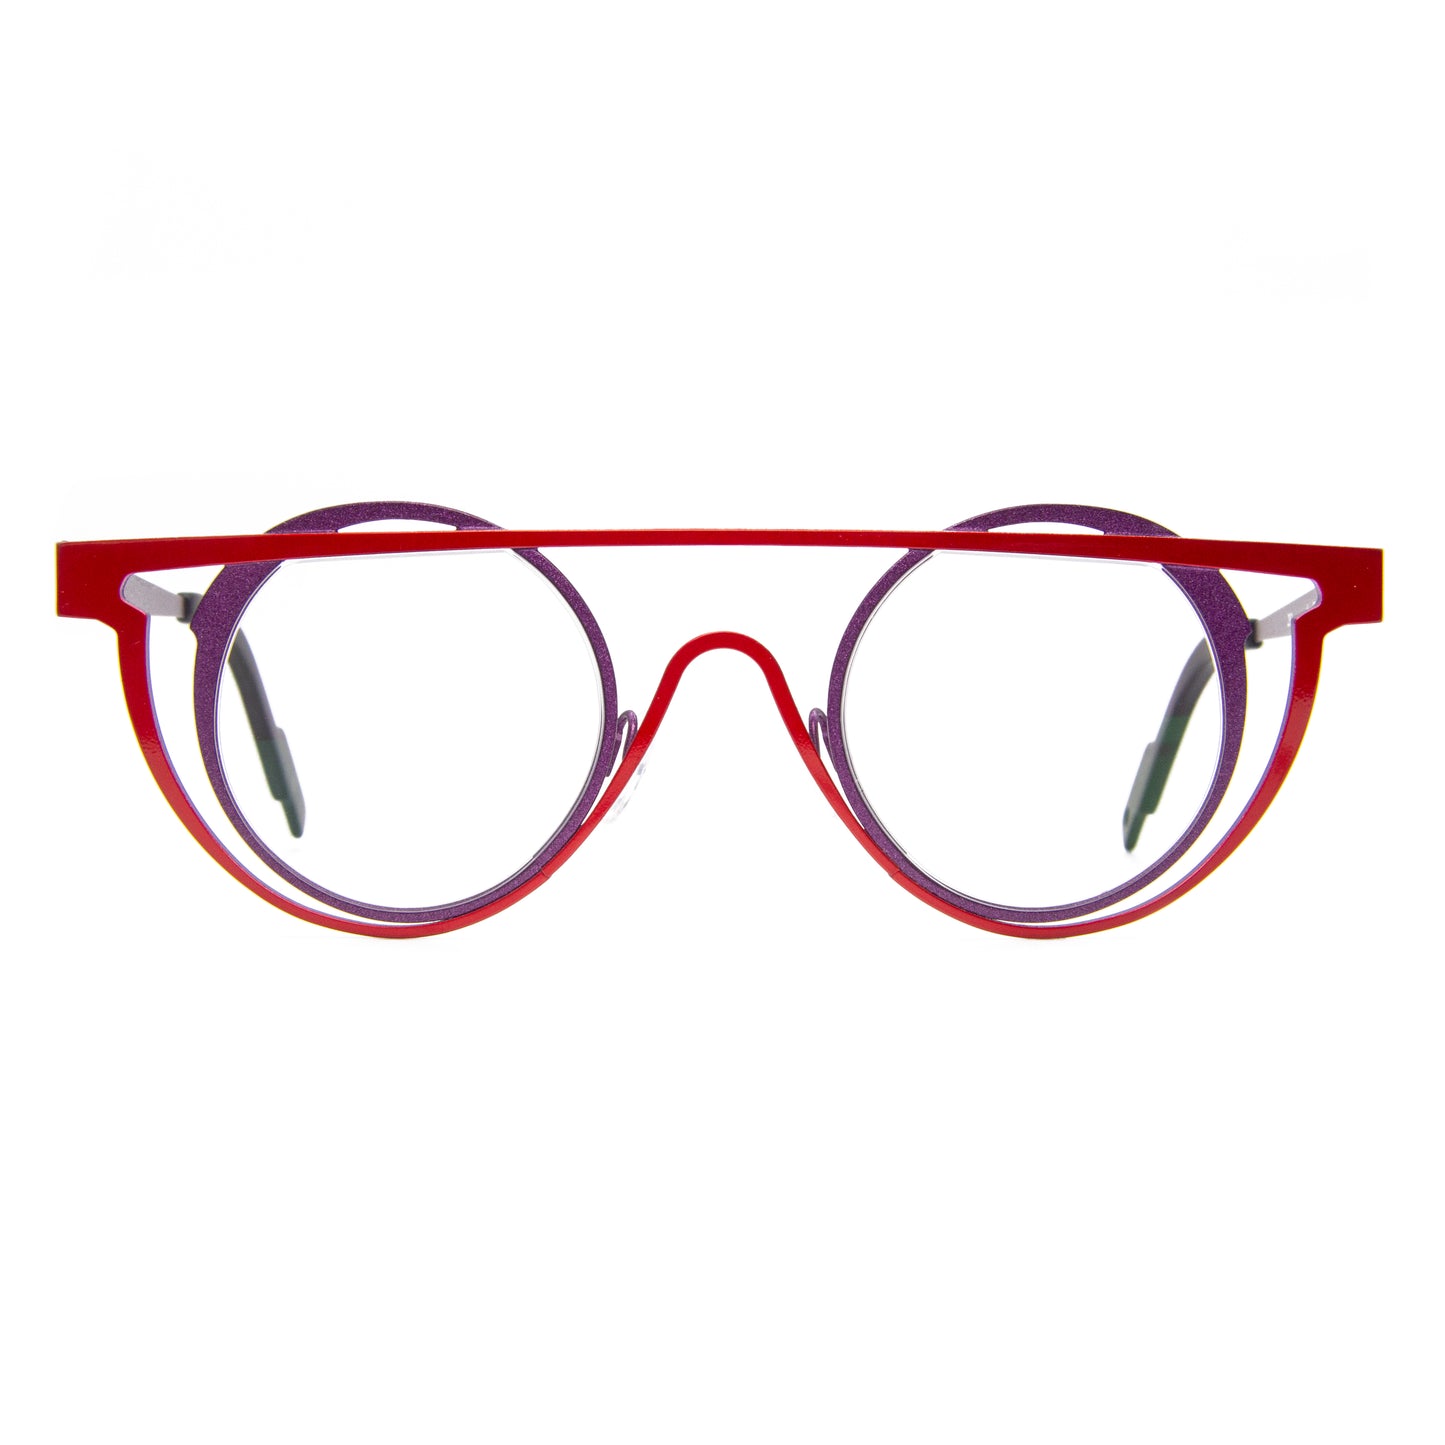 Theo - Eyewear - Sketch - 292 - Glasses